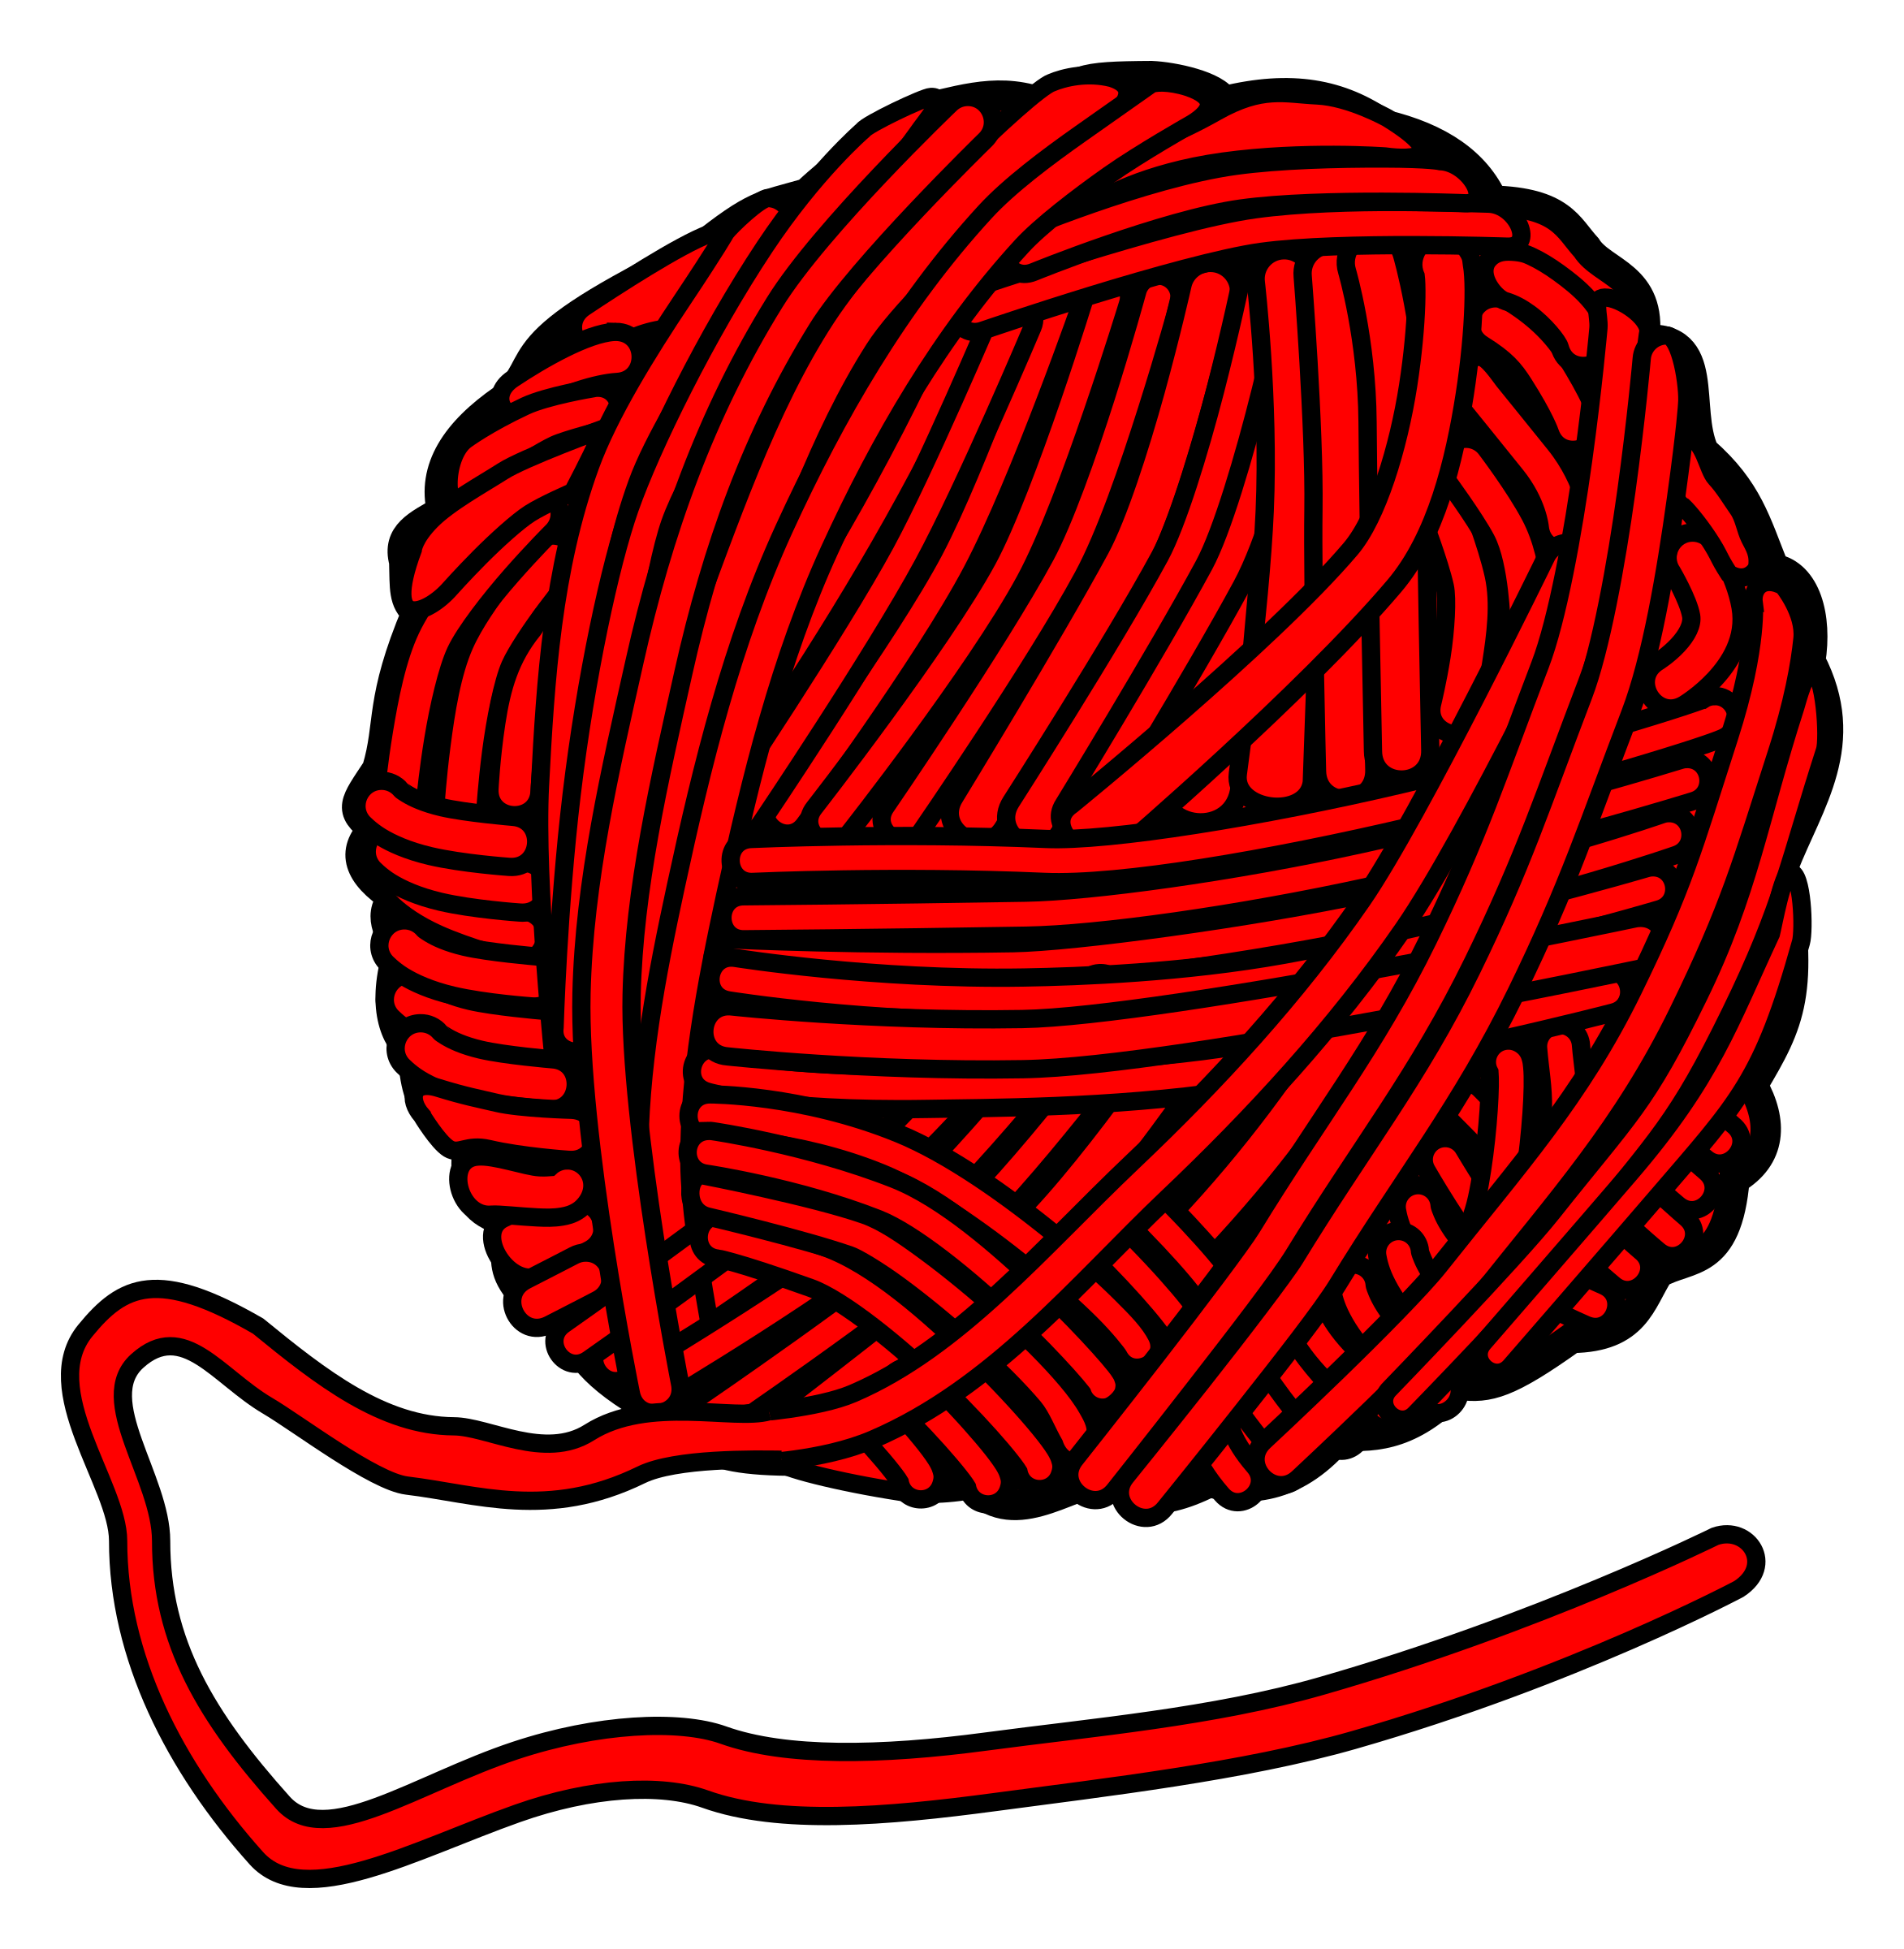 ball of yarn clip art - photo #24